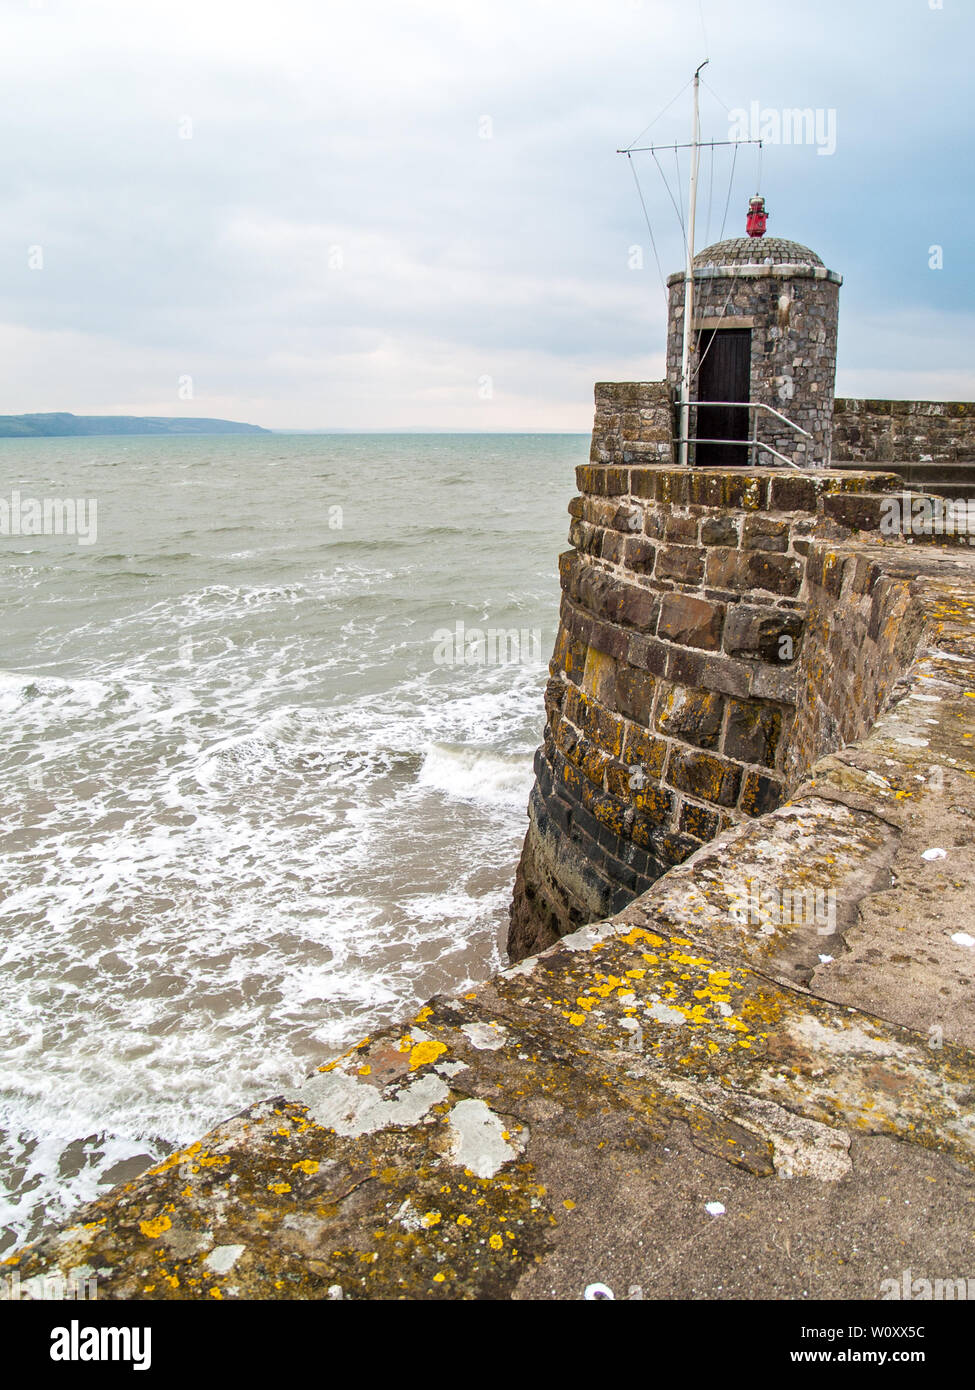 Le phare et belvédère sur le mur du port à Saundersfoot Pembrokeshire, dans l'ouest du pays de Galles, Royaume-Uni. Banque D'Images